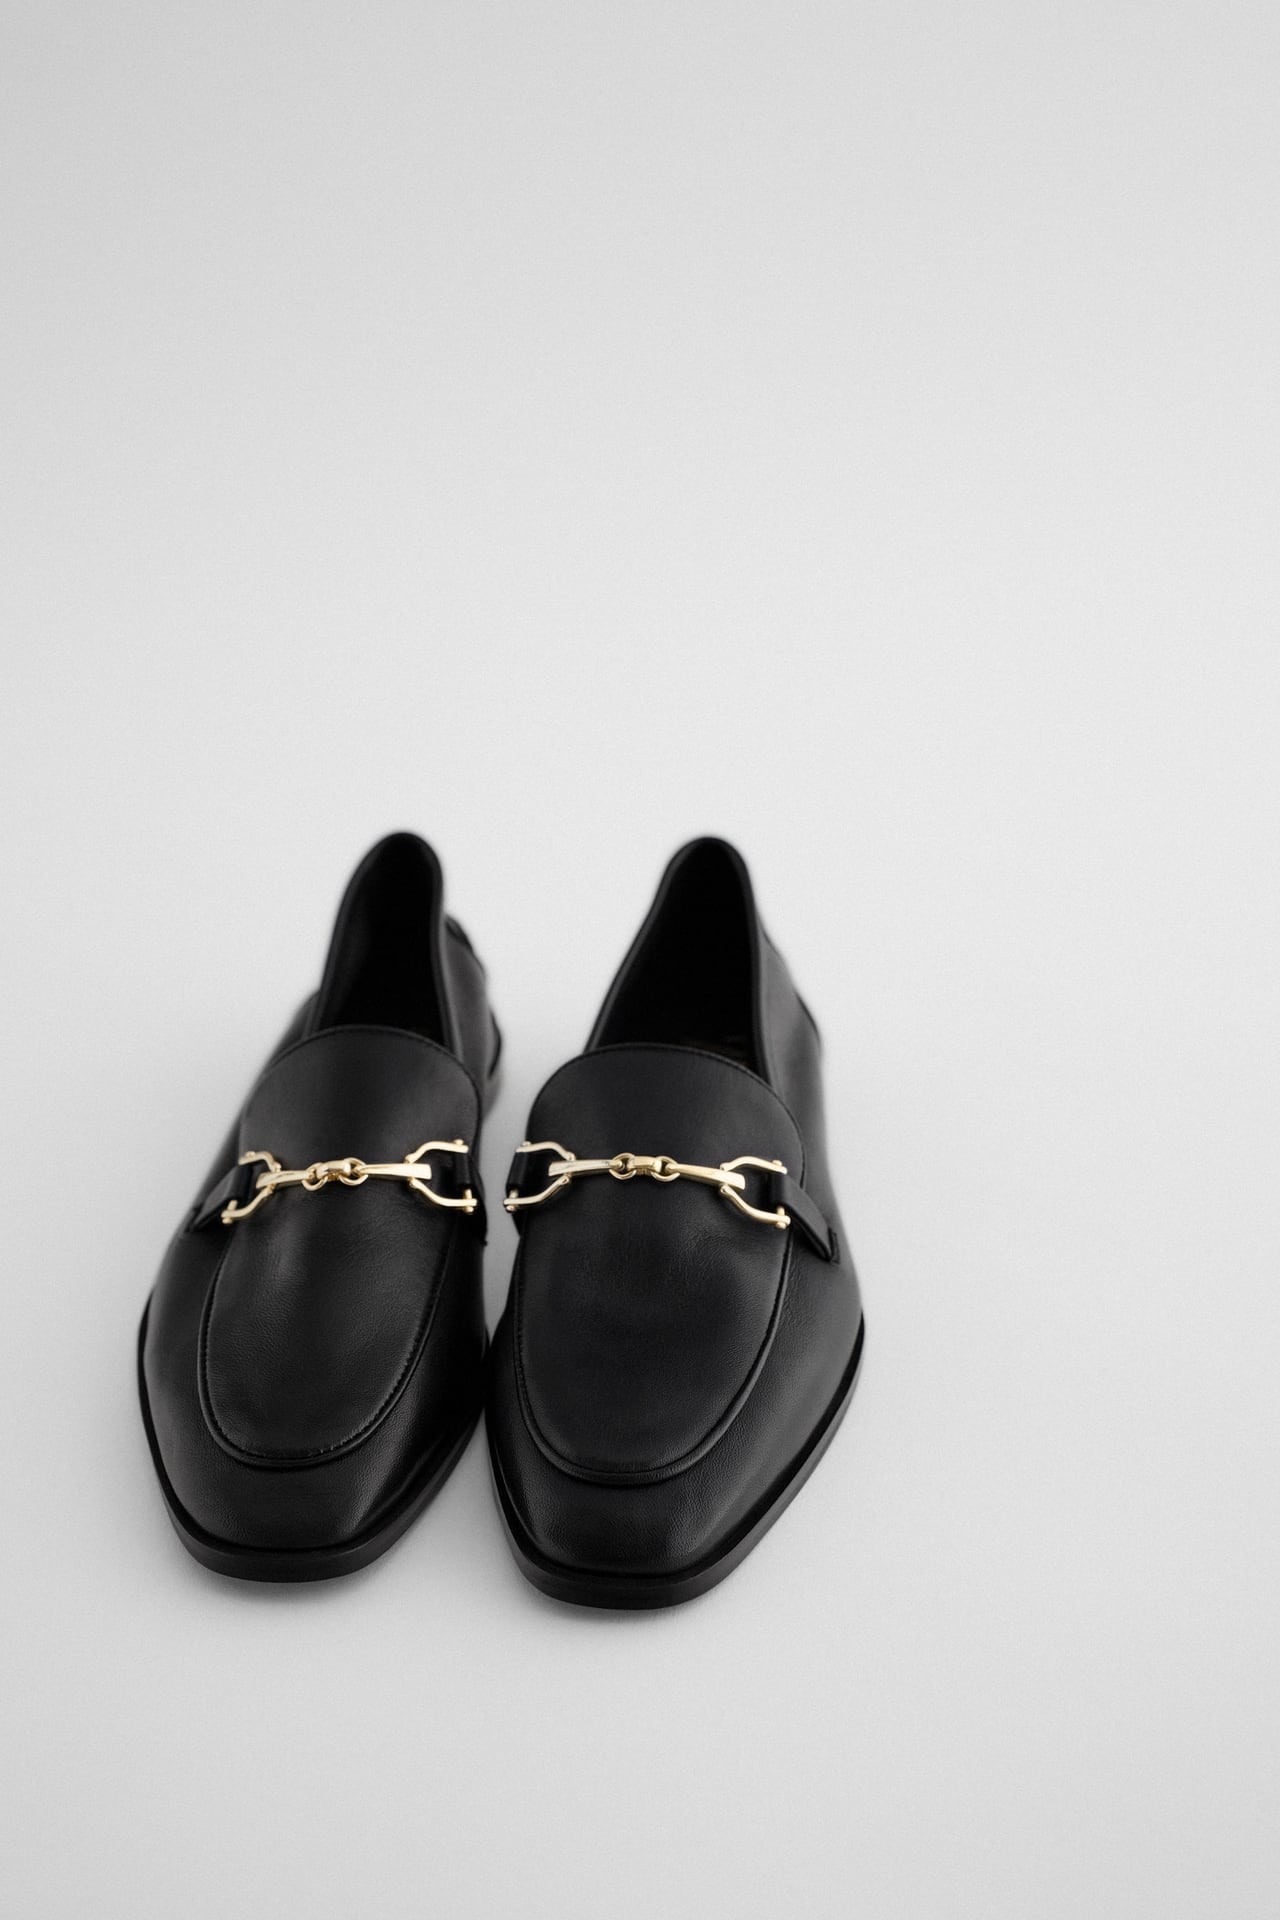 Zapato plano tipo mocasín negro de piel con hebilla en la parte delantera, de Zara (39,95€)